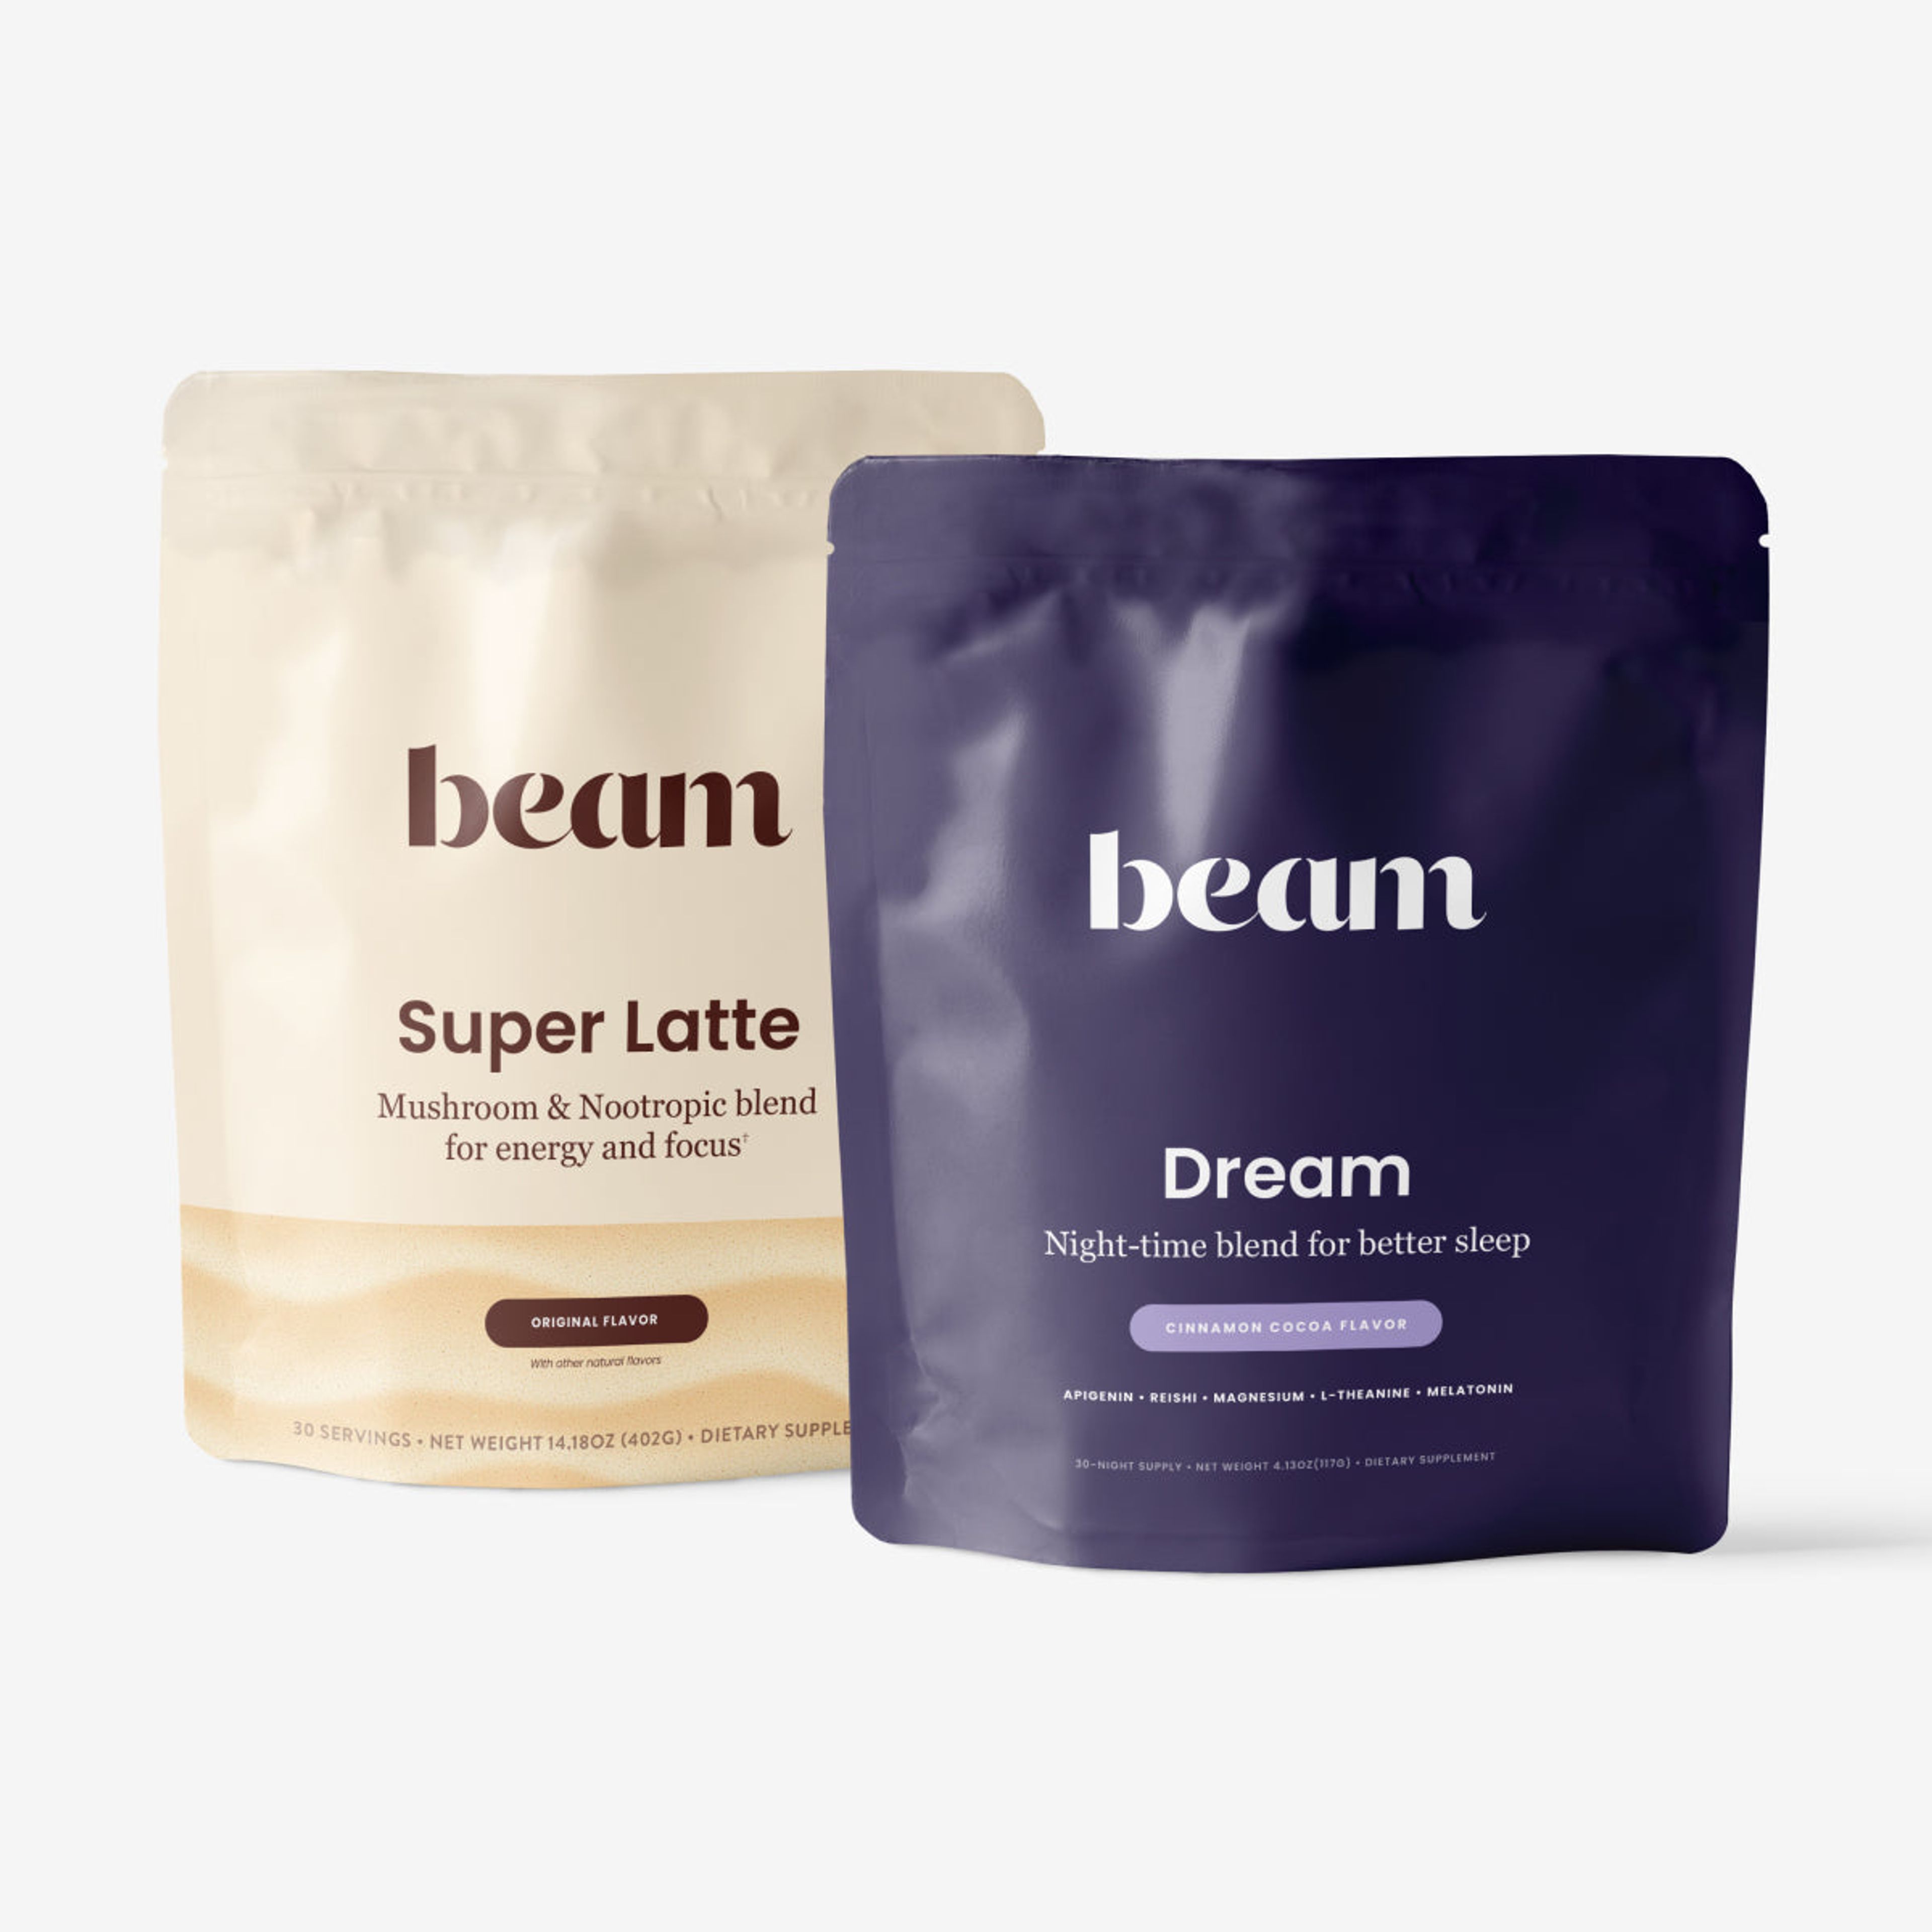 The Dream x Super Latte Bundle